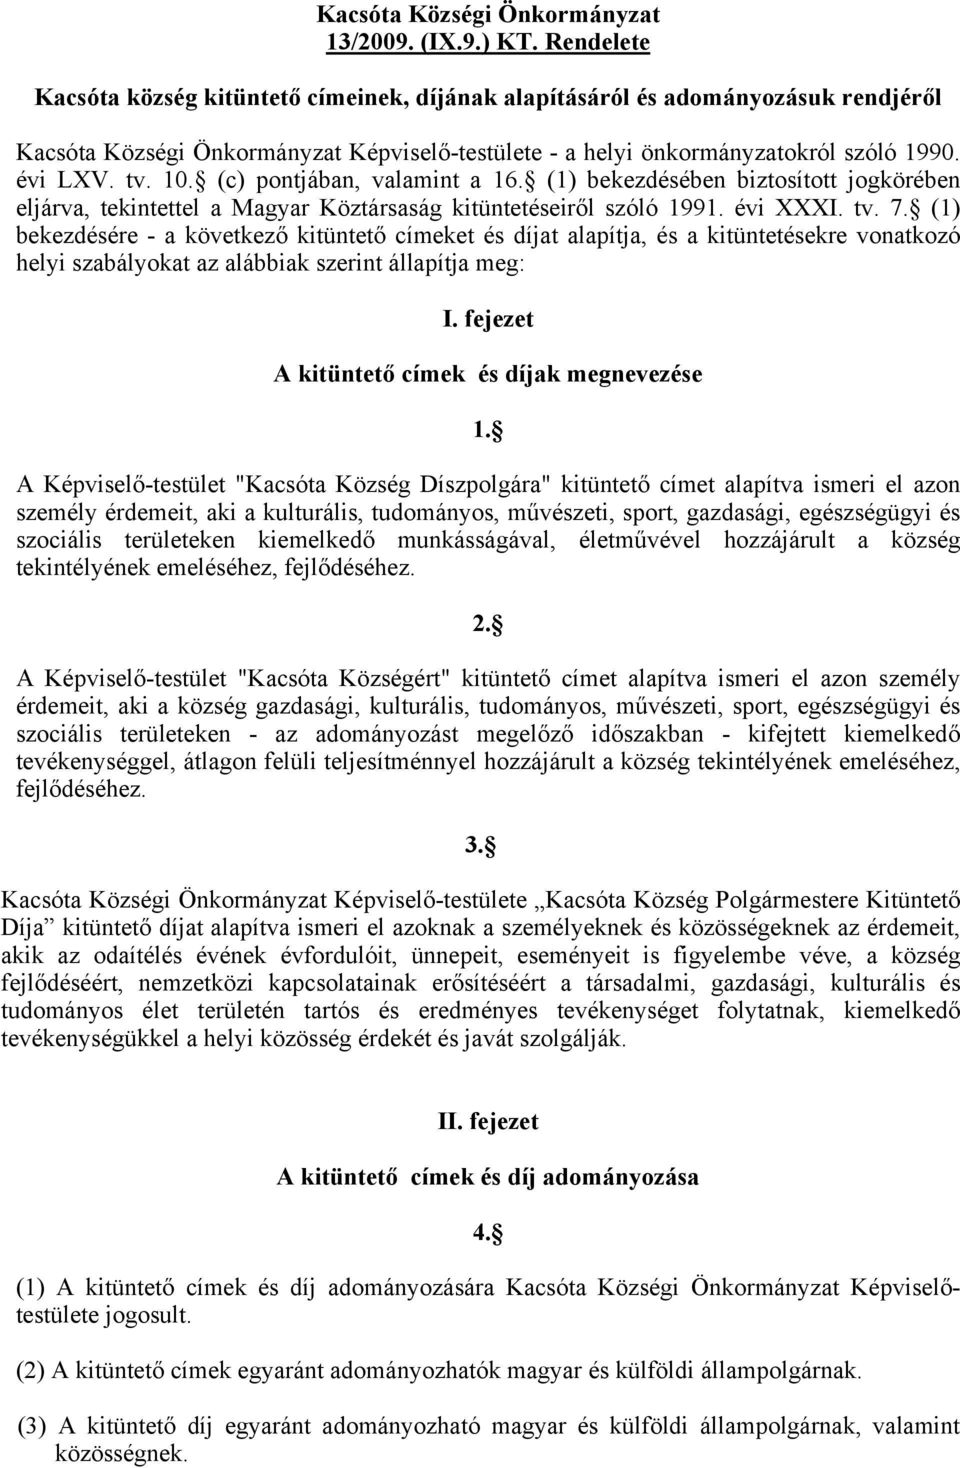 (c) pontjában, valamint a 16. (1) bekezdésében biztosított jogkörében eljárva, tekintettel a Magyar Köztársaság kitüntetéseiről szóló 1991. évi XXXI. tv. 7.